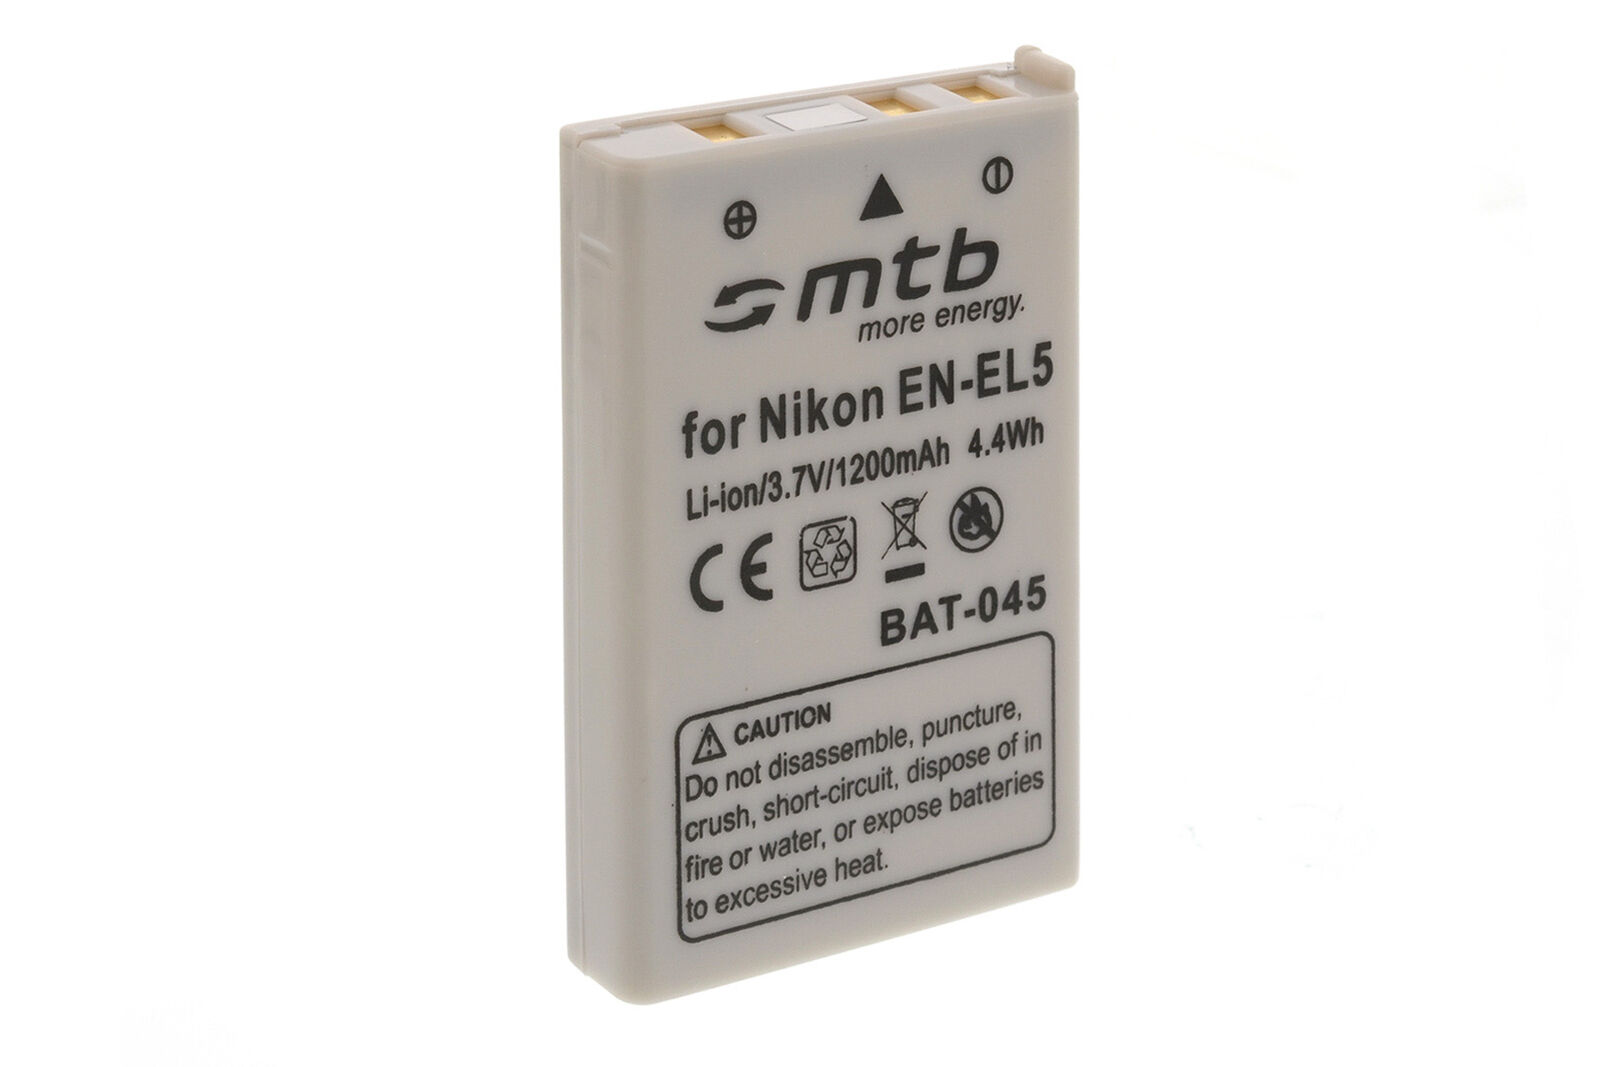 Batteria EN-EL5 ENEL5 per Nikon Coolpix P90 P100 P500, P5000, P5100, P6000, S10